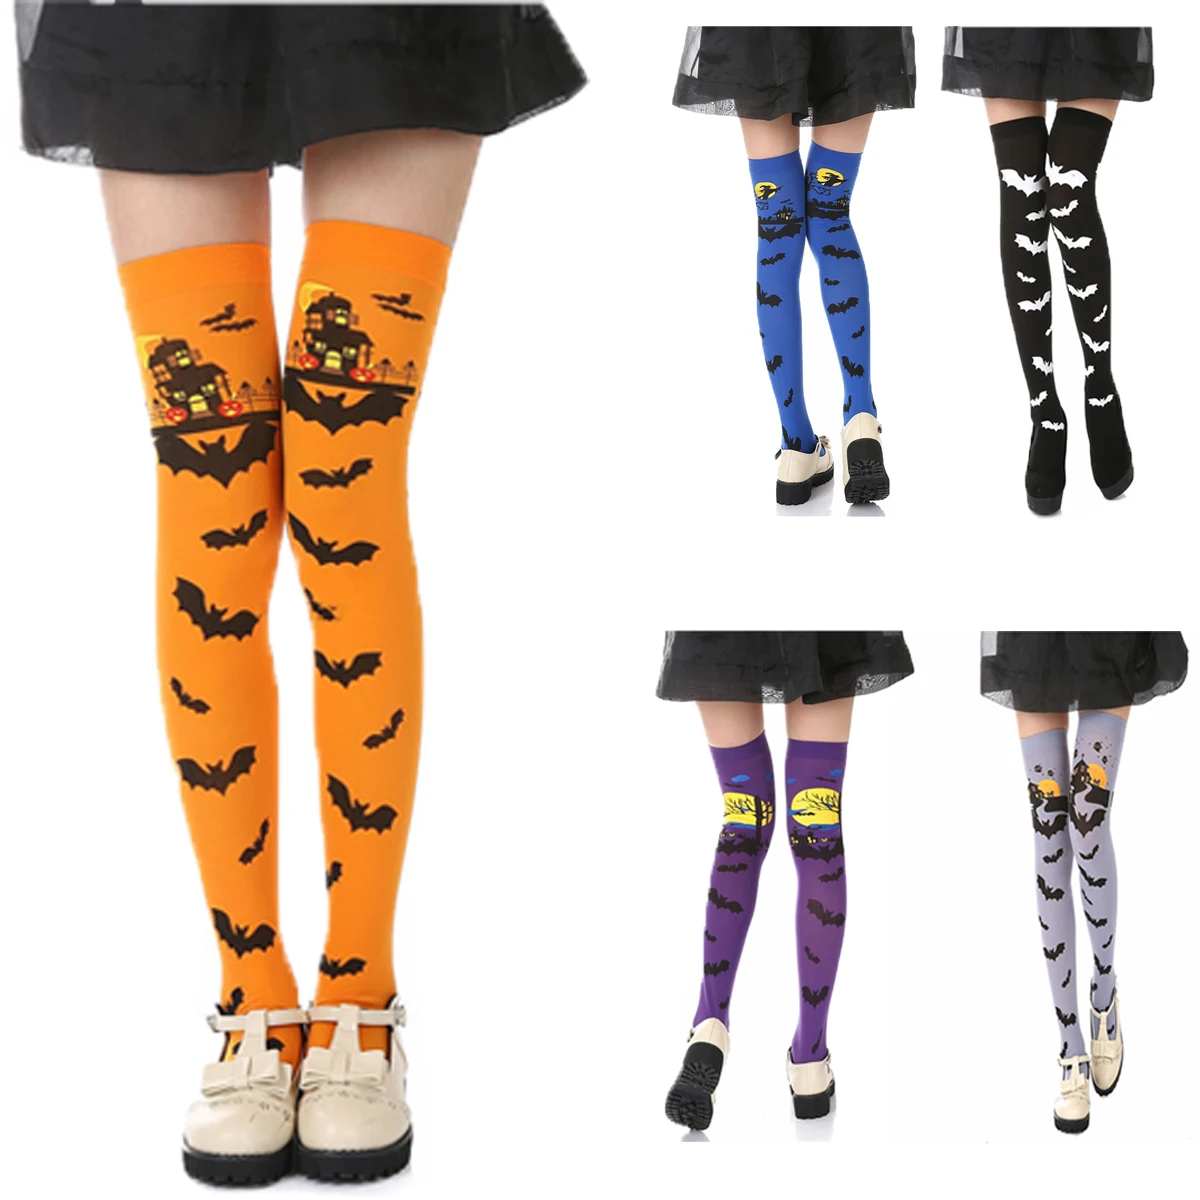 5 стилей, колготки для девочек на Хэллоуин, чулки, белые чулки с изображением ведьмы, скелета кости ног, черные длинные чулки выше колена